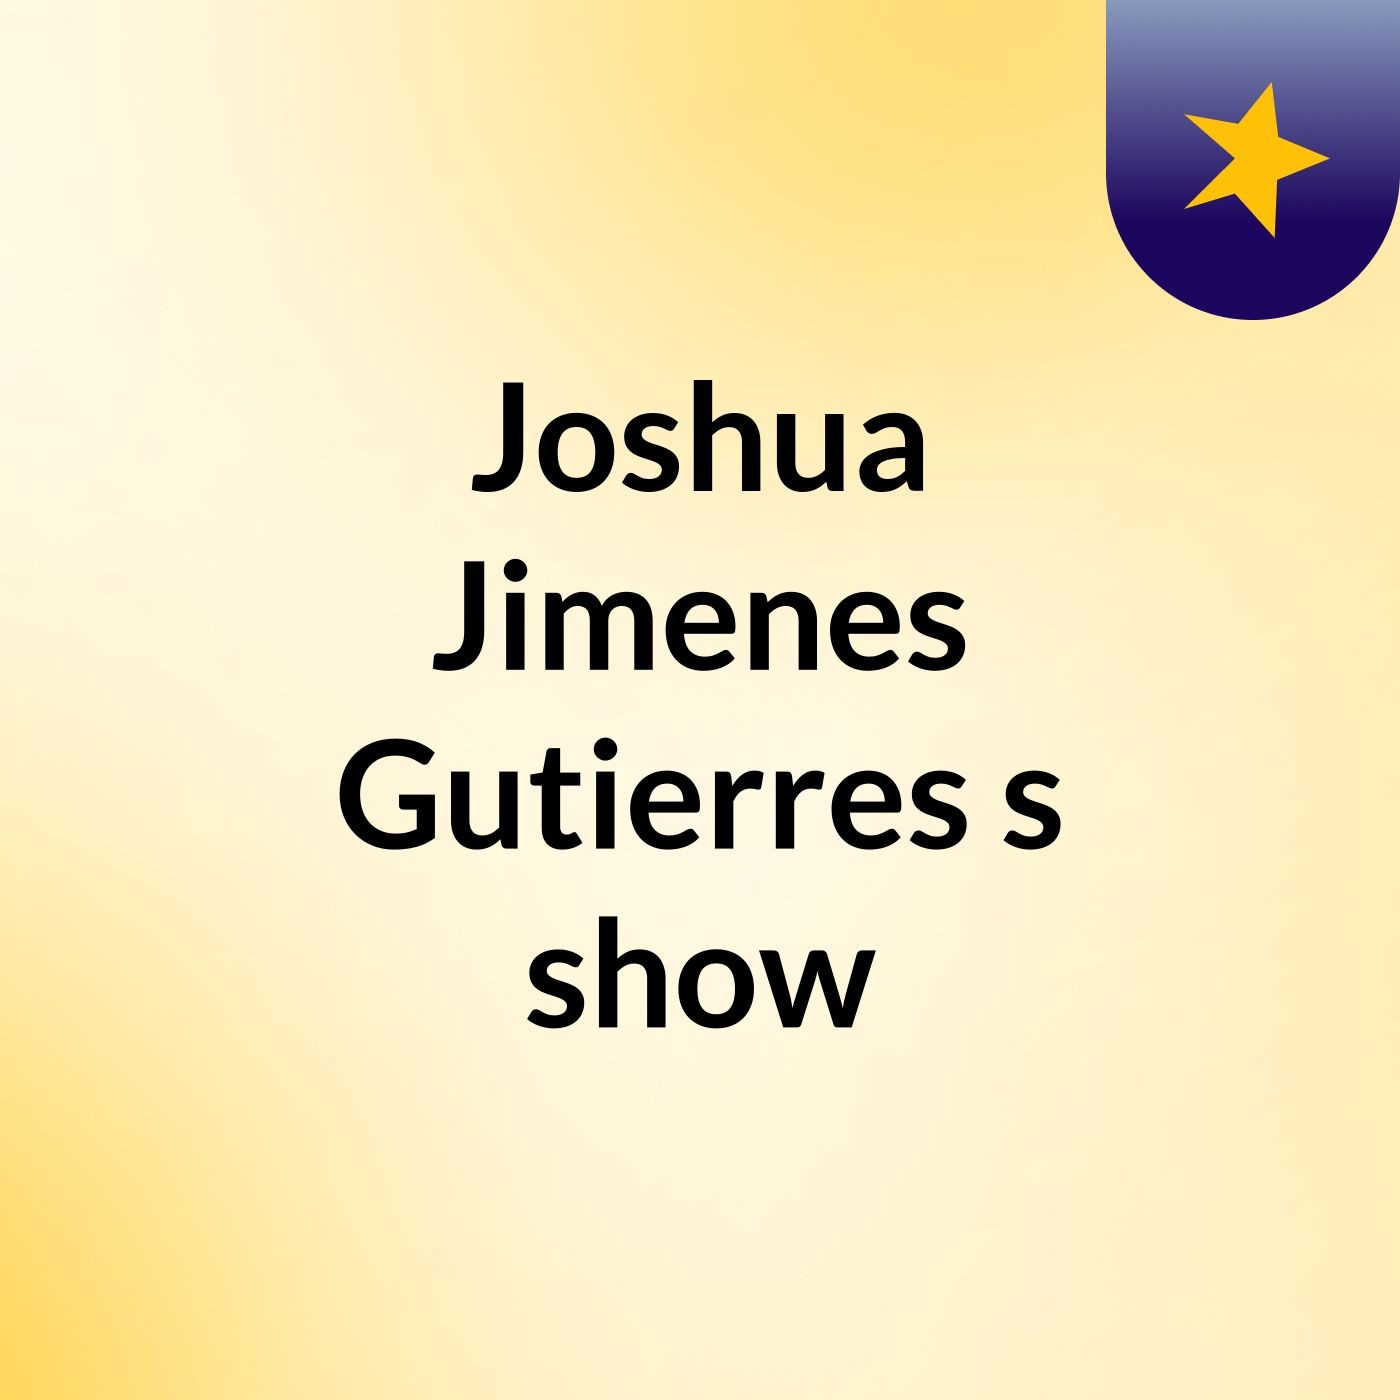 Joshua Jimenes Gutierres's show